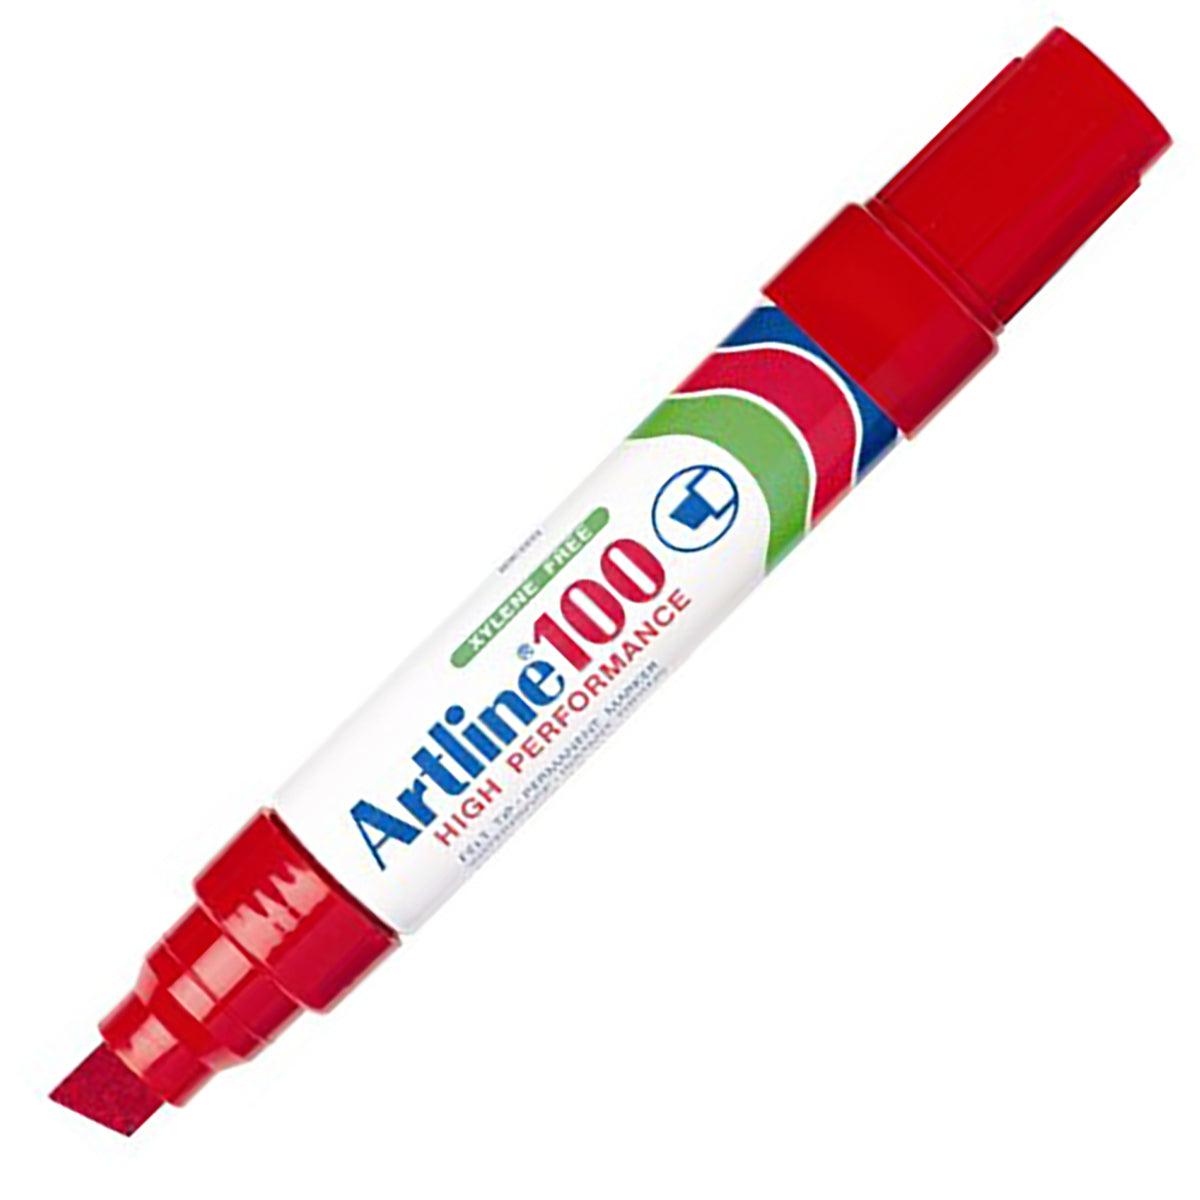 ARTLINE Permanent Marker 100-Red